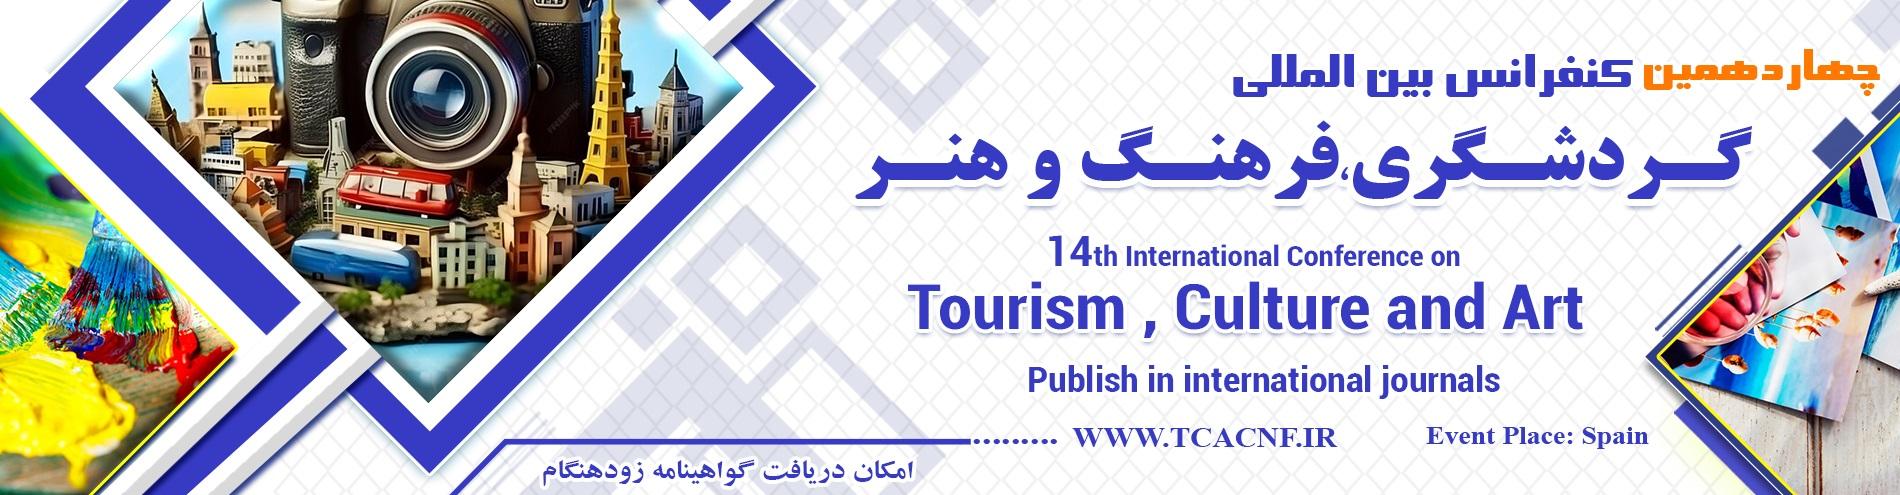 کنفرانس بین المللی گردشگری،فرهنگ و هنر